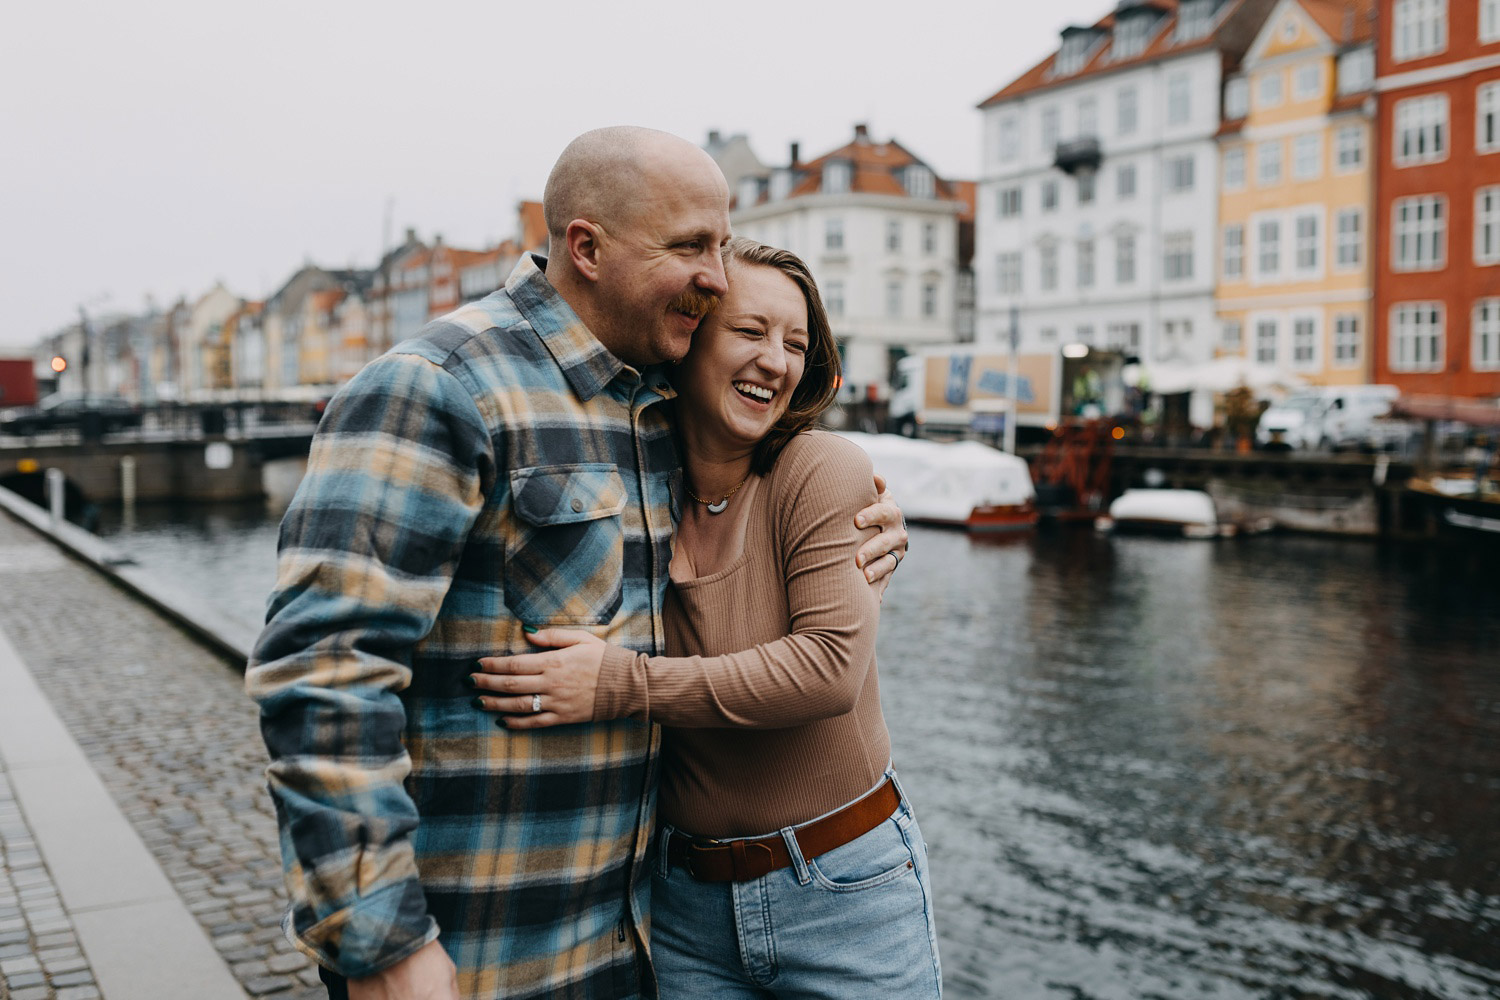 Beautiful and natural honeymoon photos in Nyhavn, Copenhagen. 